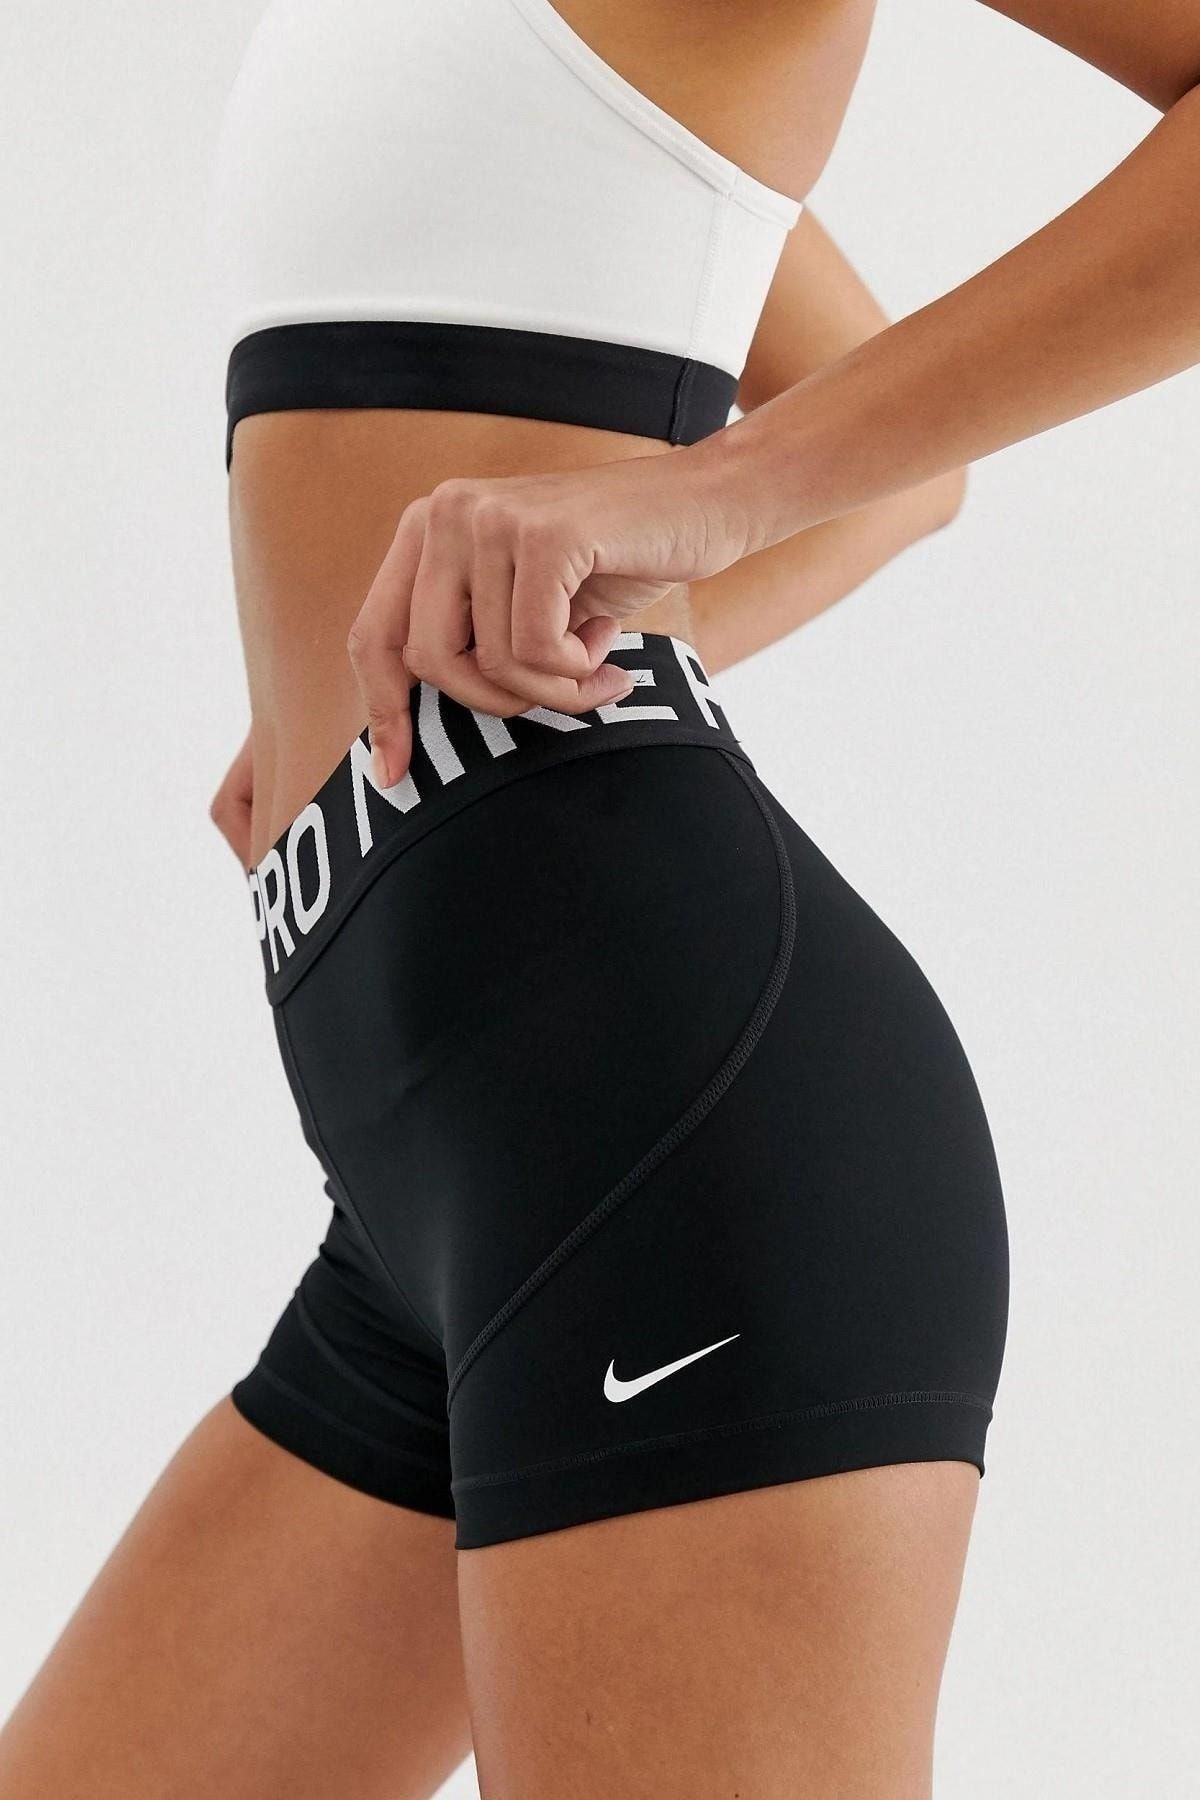 Nike Pro 3 Training Tight Shorts Black Black Tights Shorts Cz